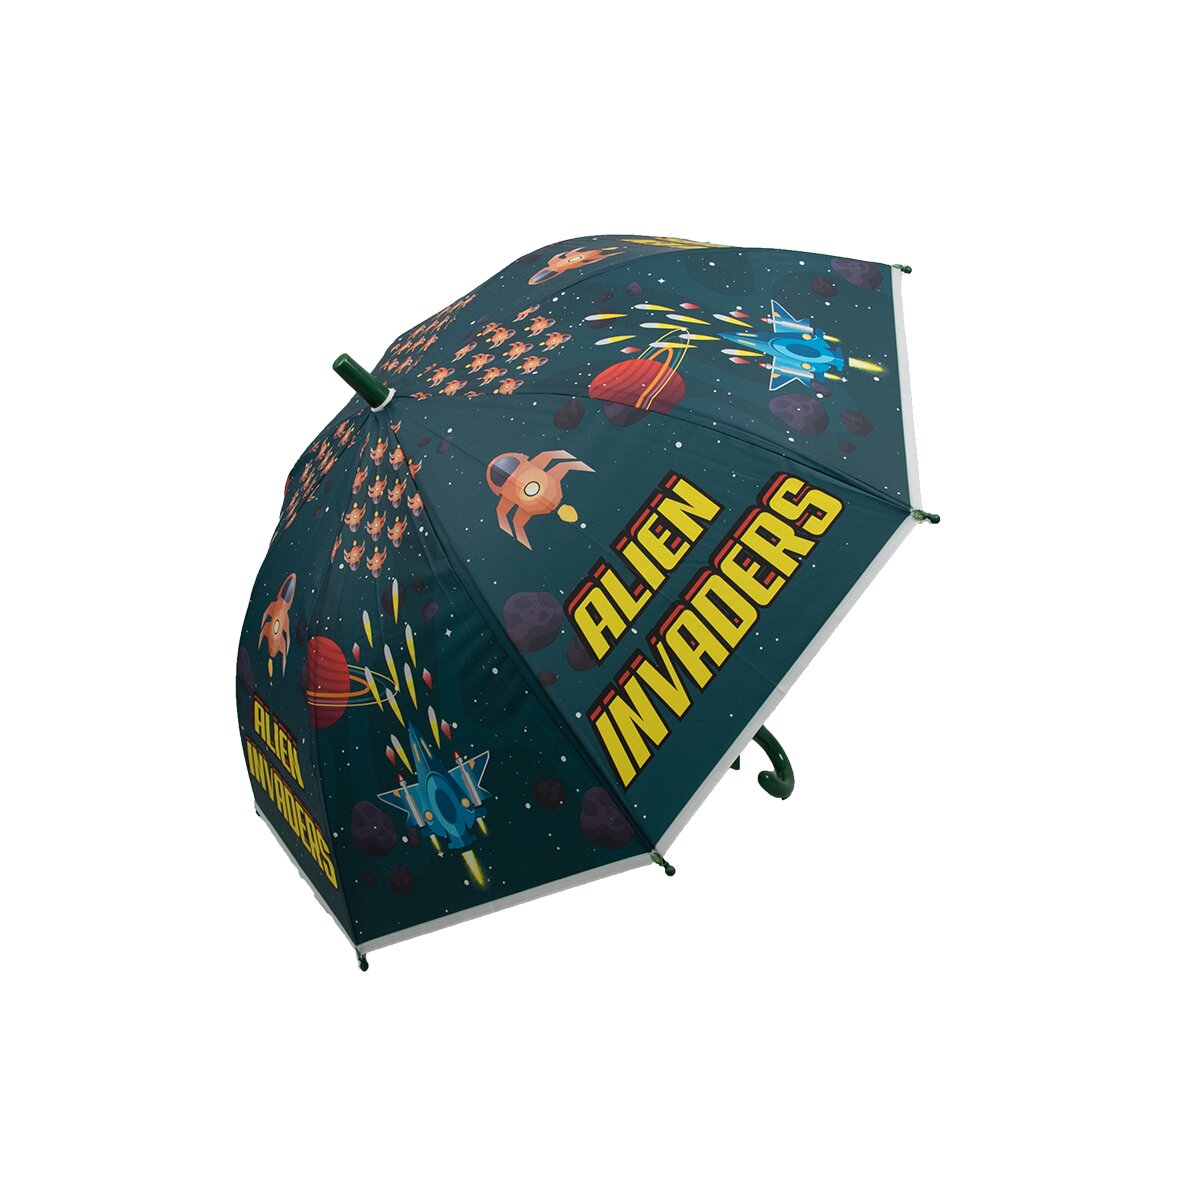 Kinderschirm | Regenschirm | Schirm | Trillerpfeife am...